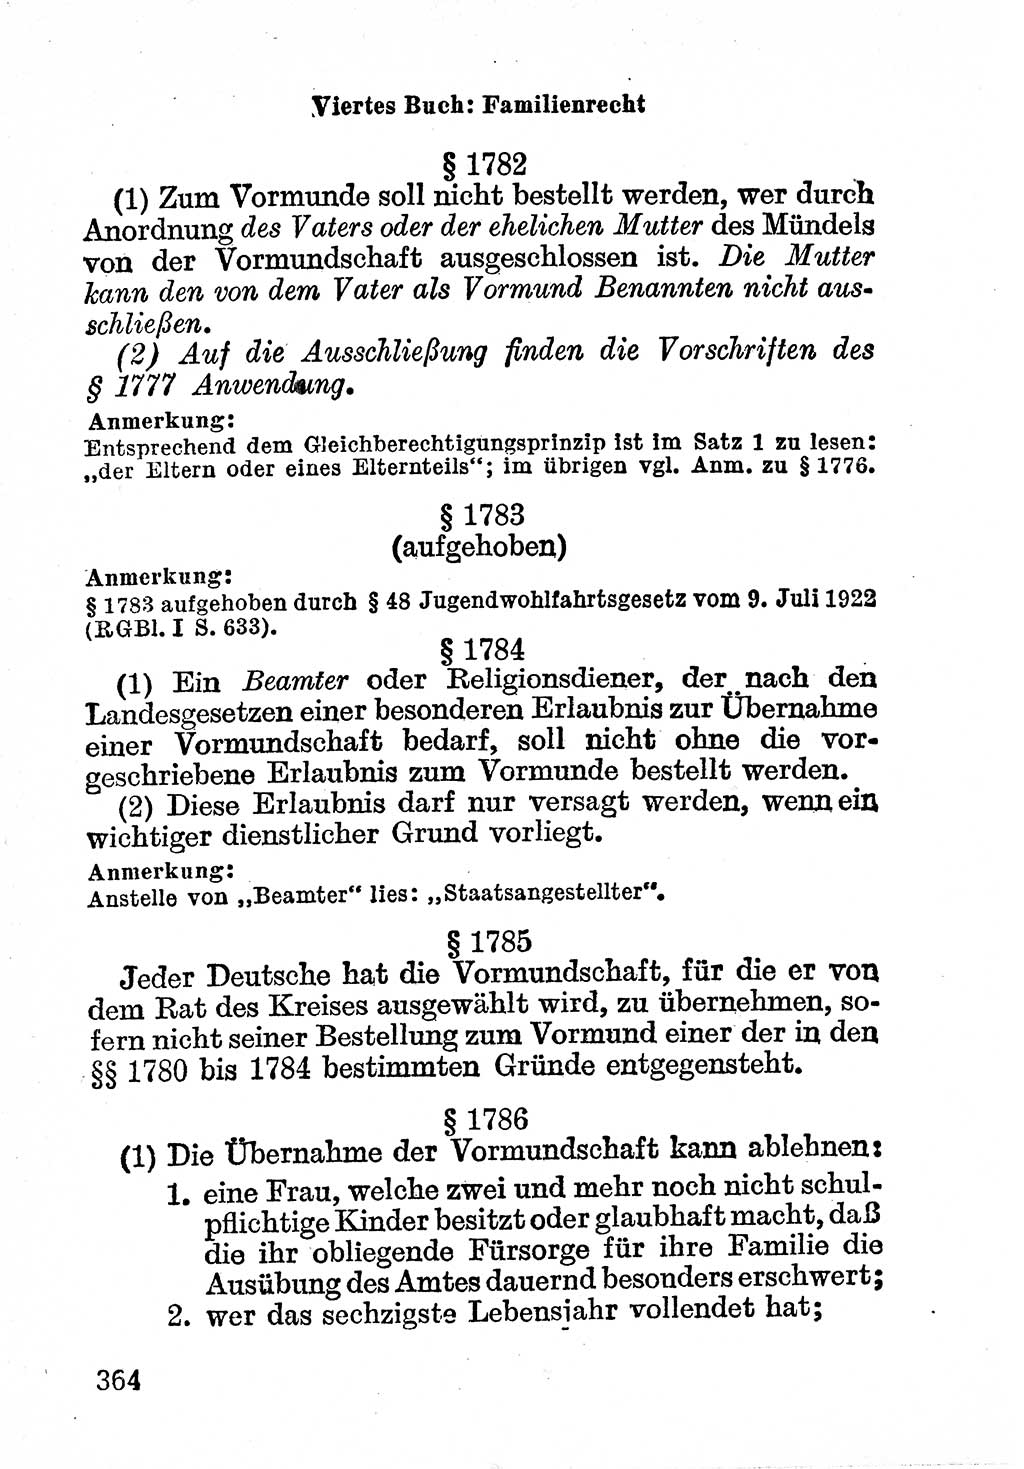 Bürgerliches Gesetzbuch (BGB) nebst wichtigen Nebengesetzen [Deutsche Demokratische Republik (DDR)] 1956, Seite 364 (BGB Nebenges. DDR 1956, S. 364)